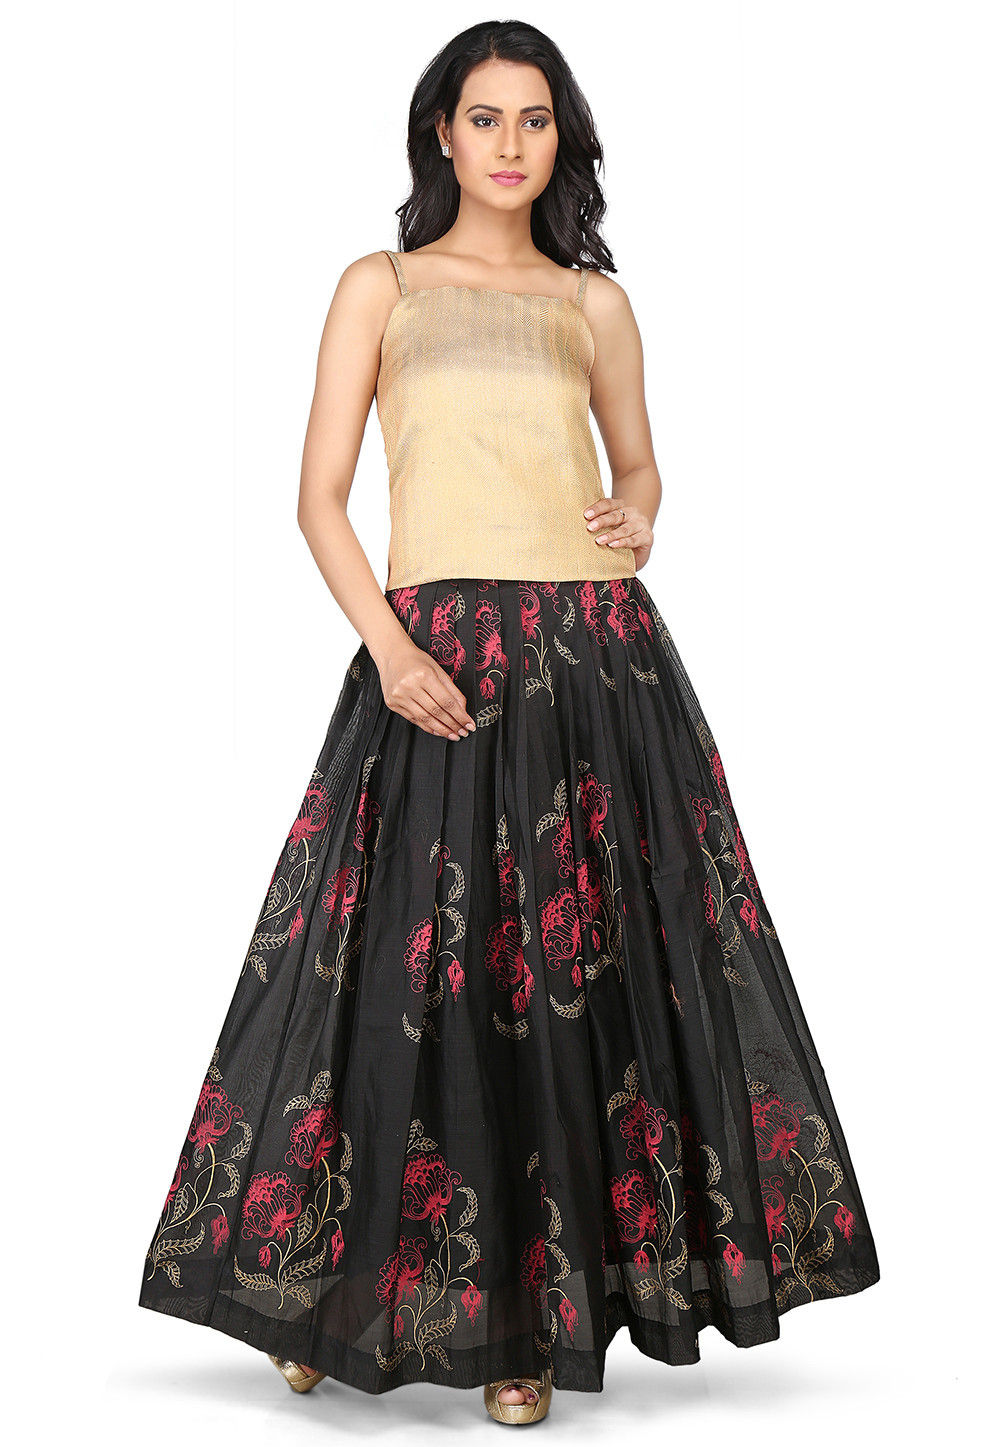 Buy Printed Chanderi Silk Long Skirt in Black Online : THU510 - Utsav ...